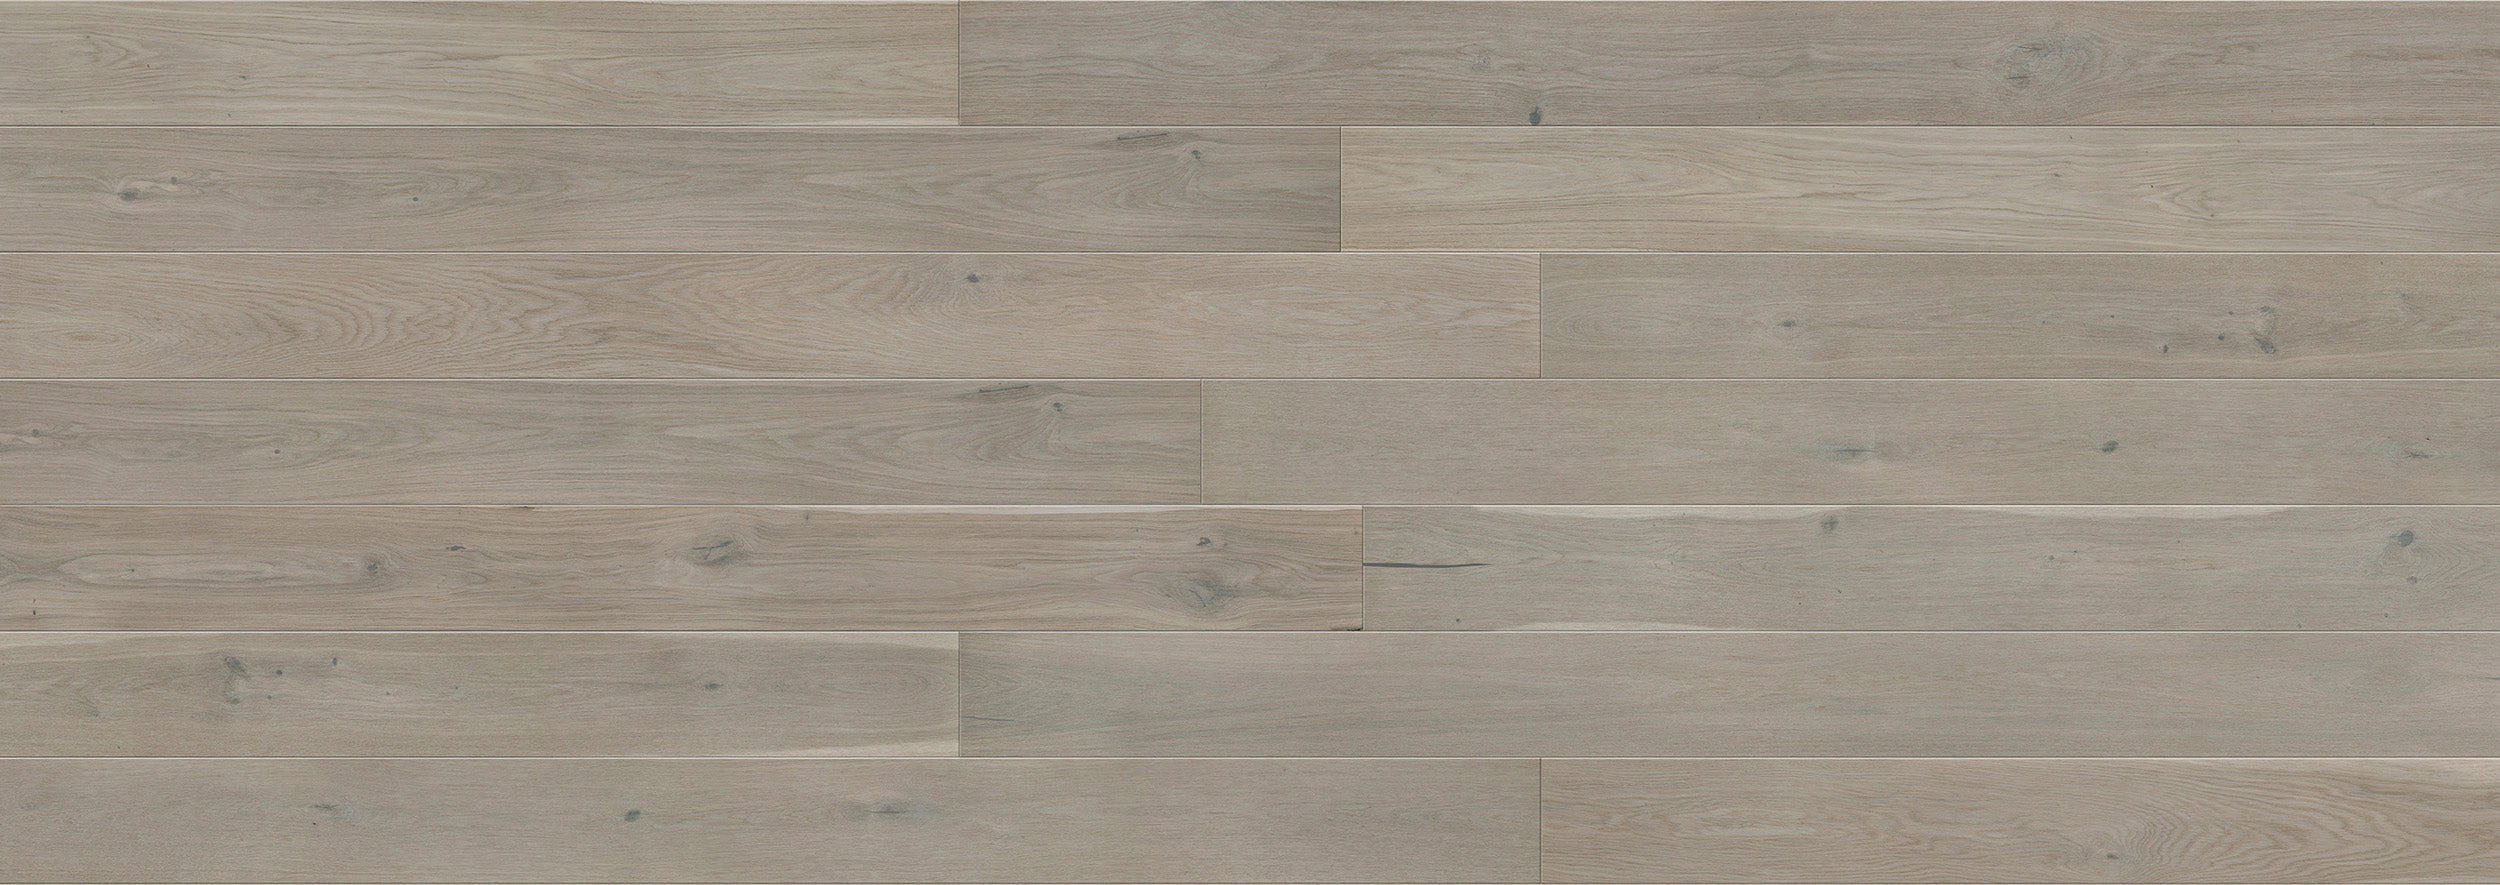 Light grey engineered wood flooring